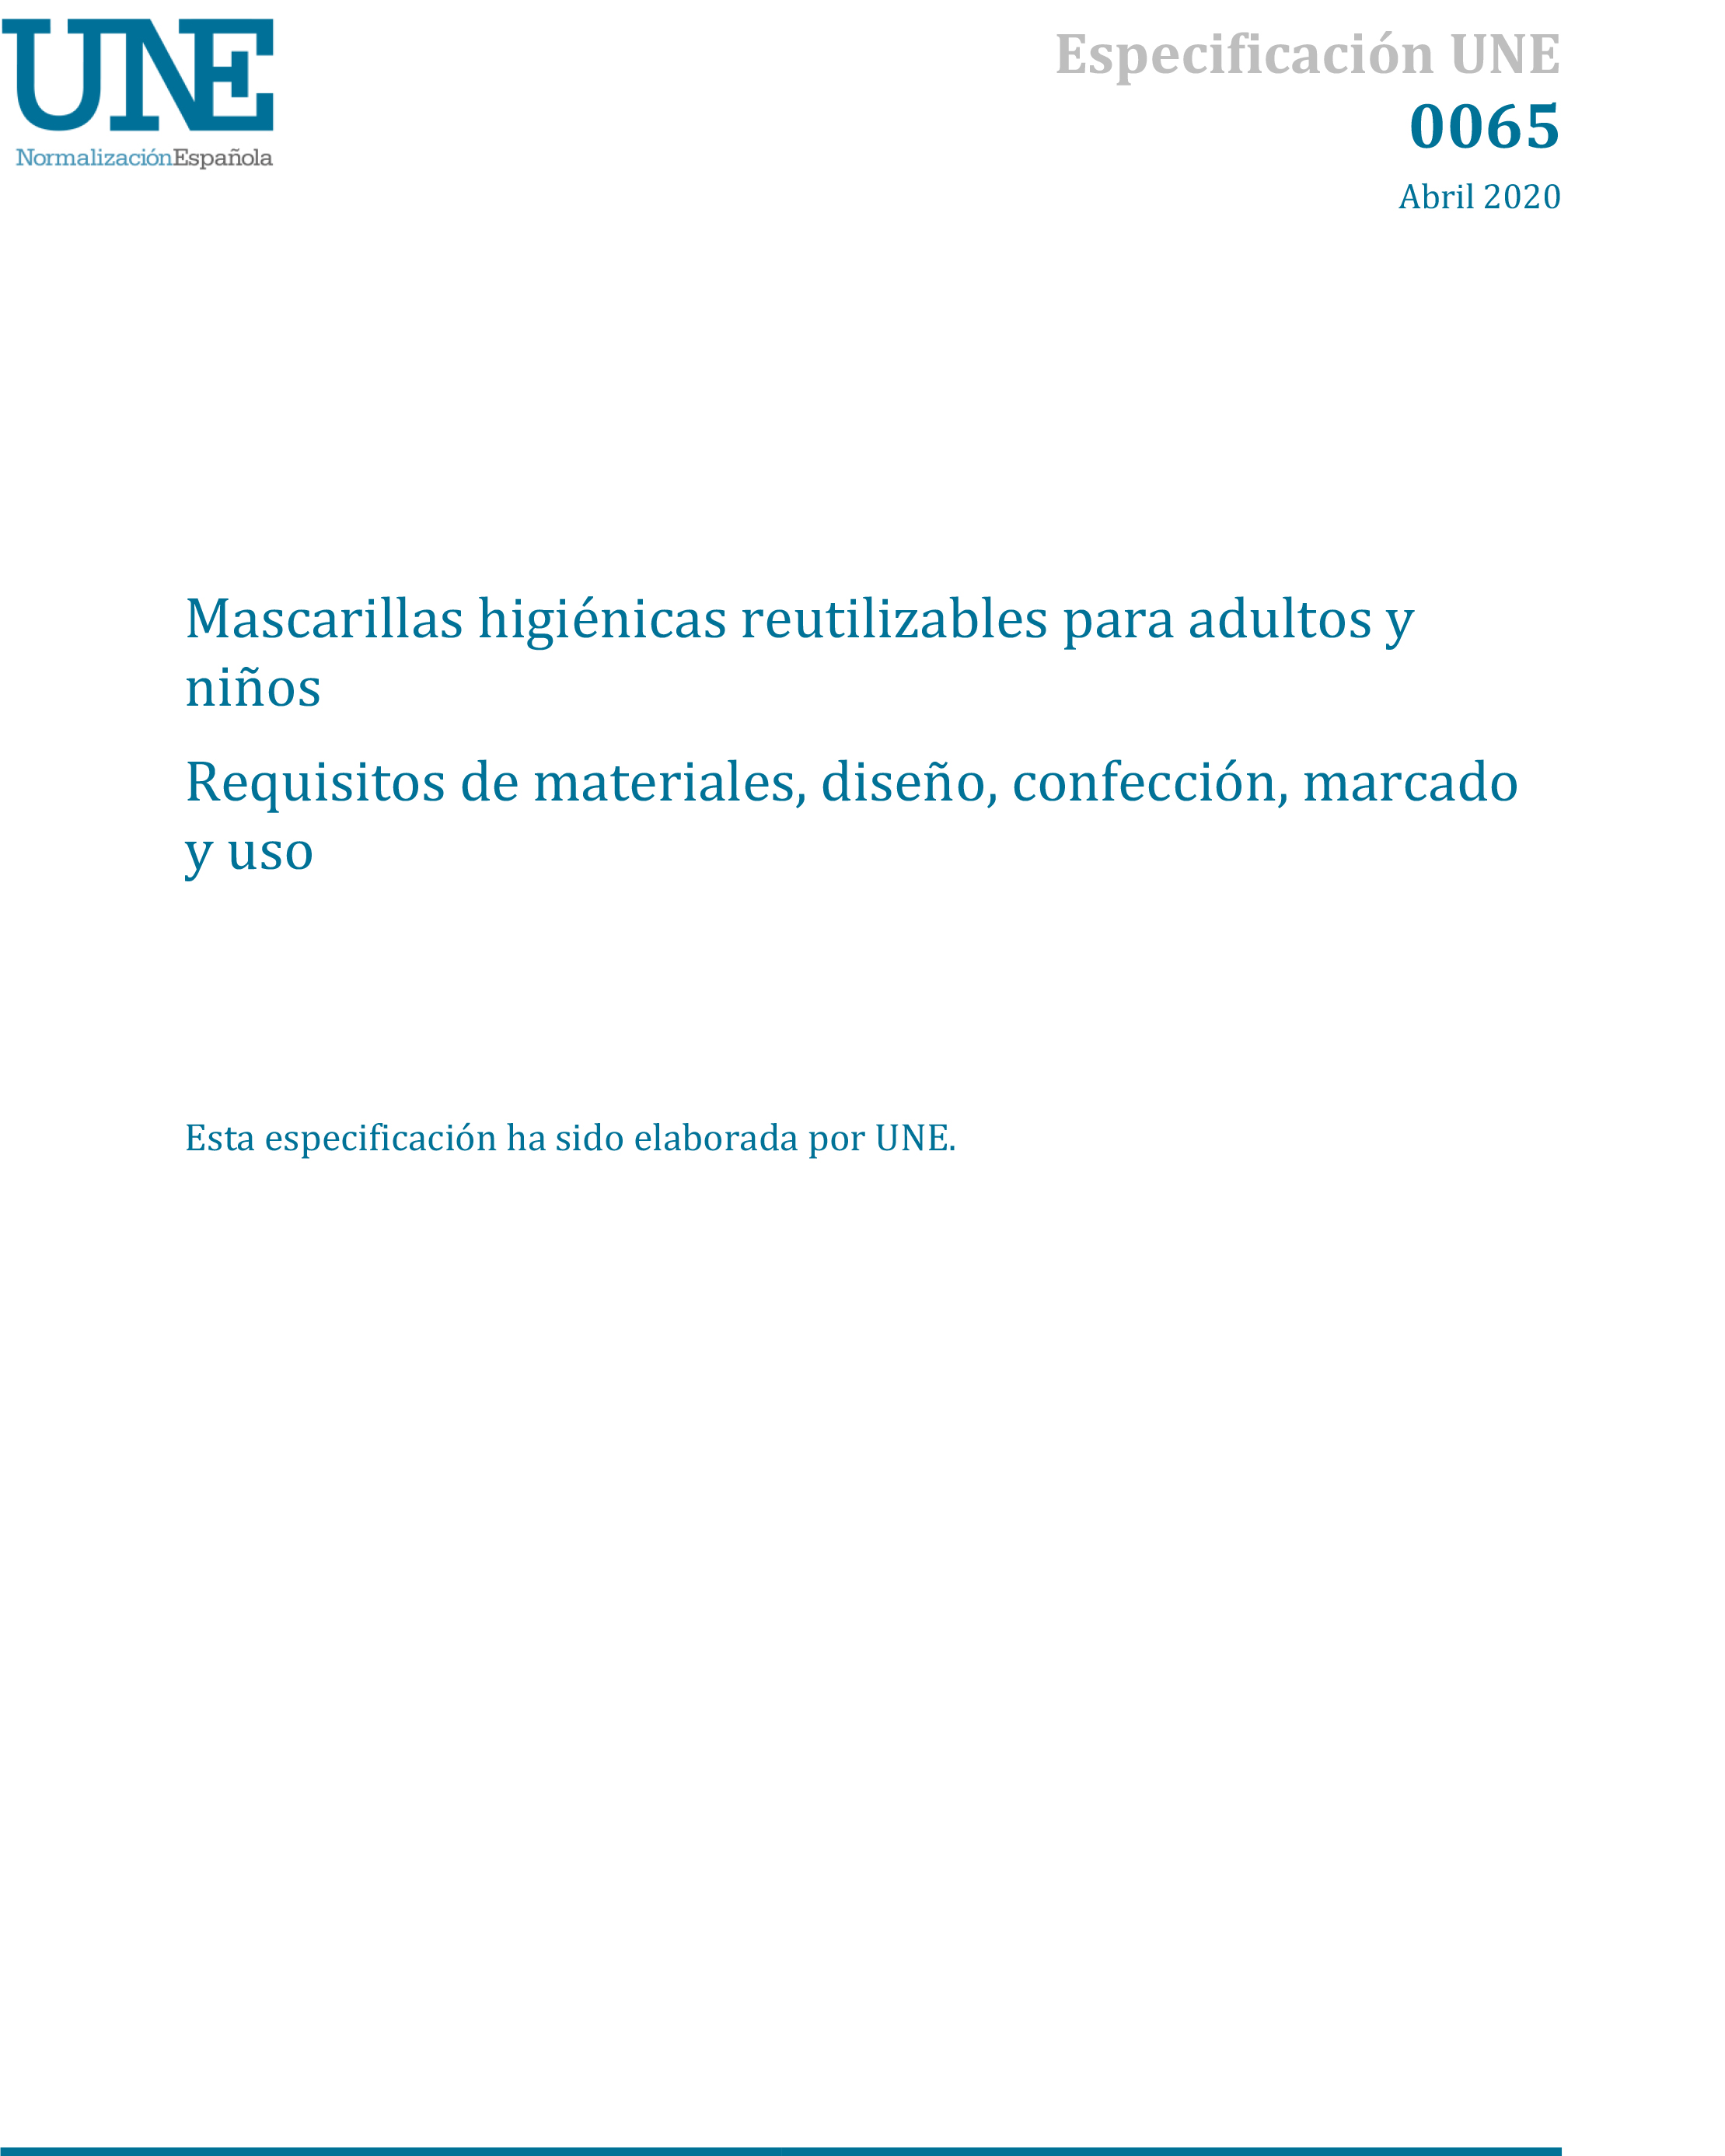 Norma UNE 0065 Requisitos mascarillas higiénicas reutilizables